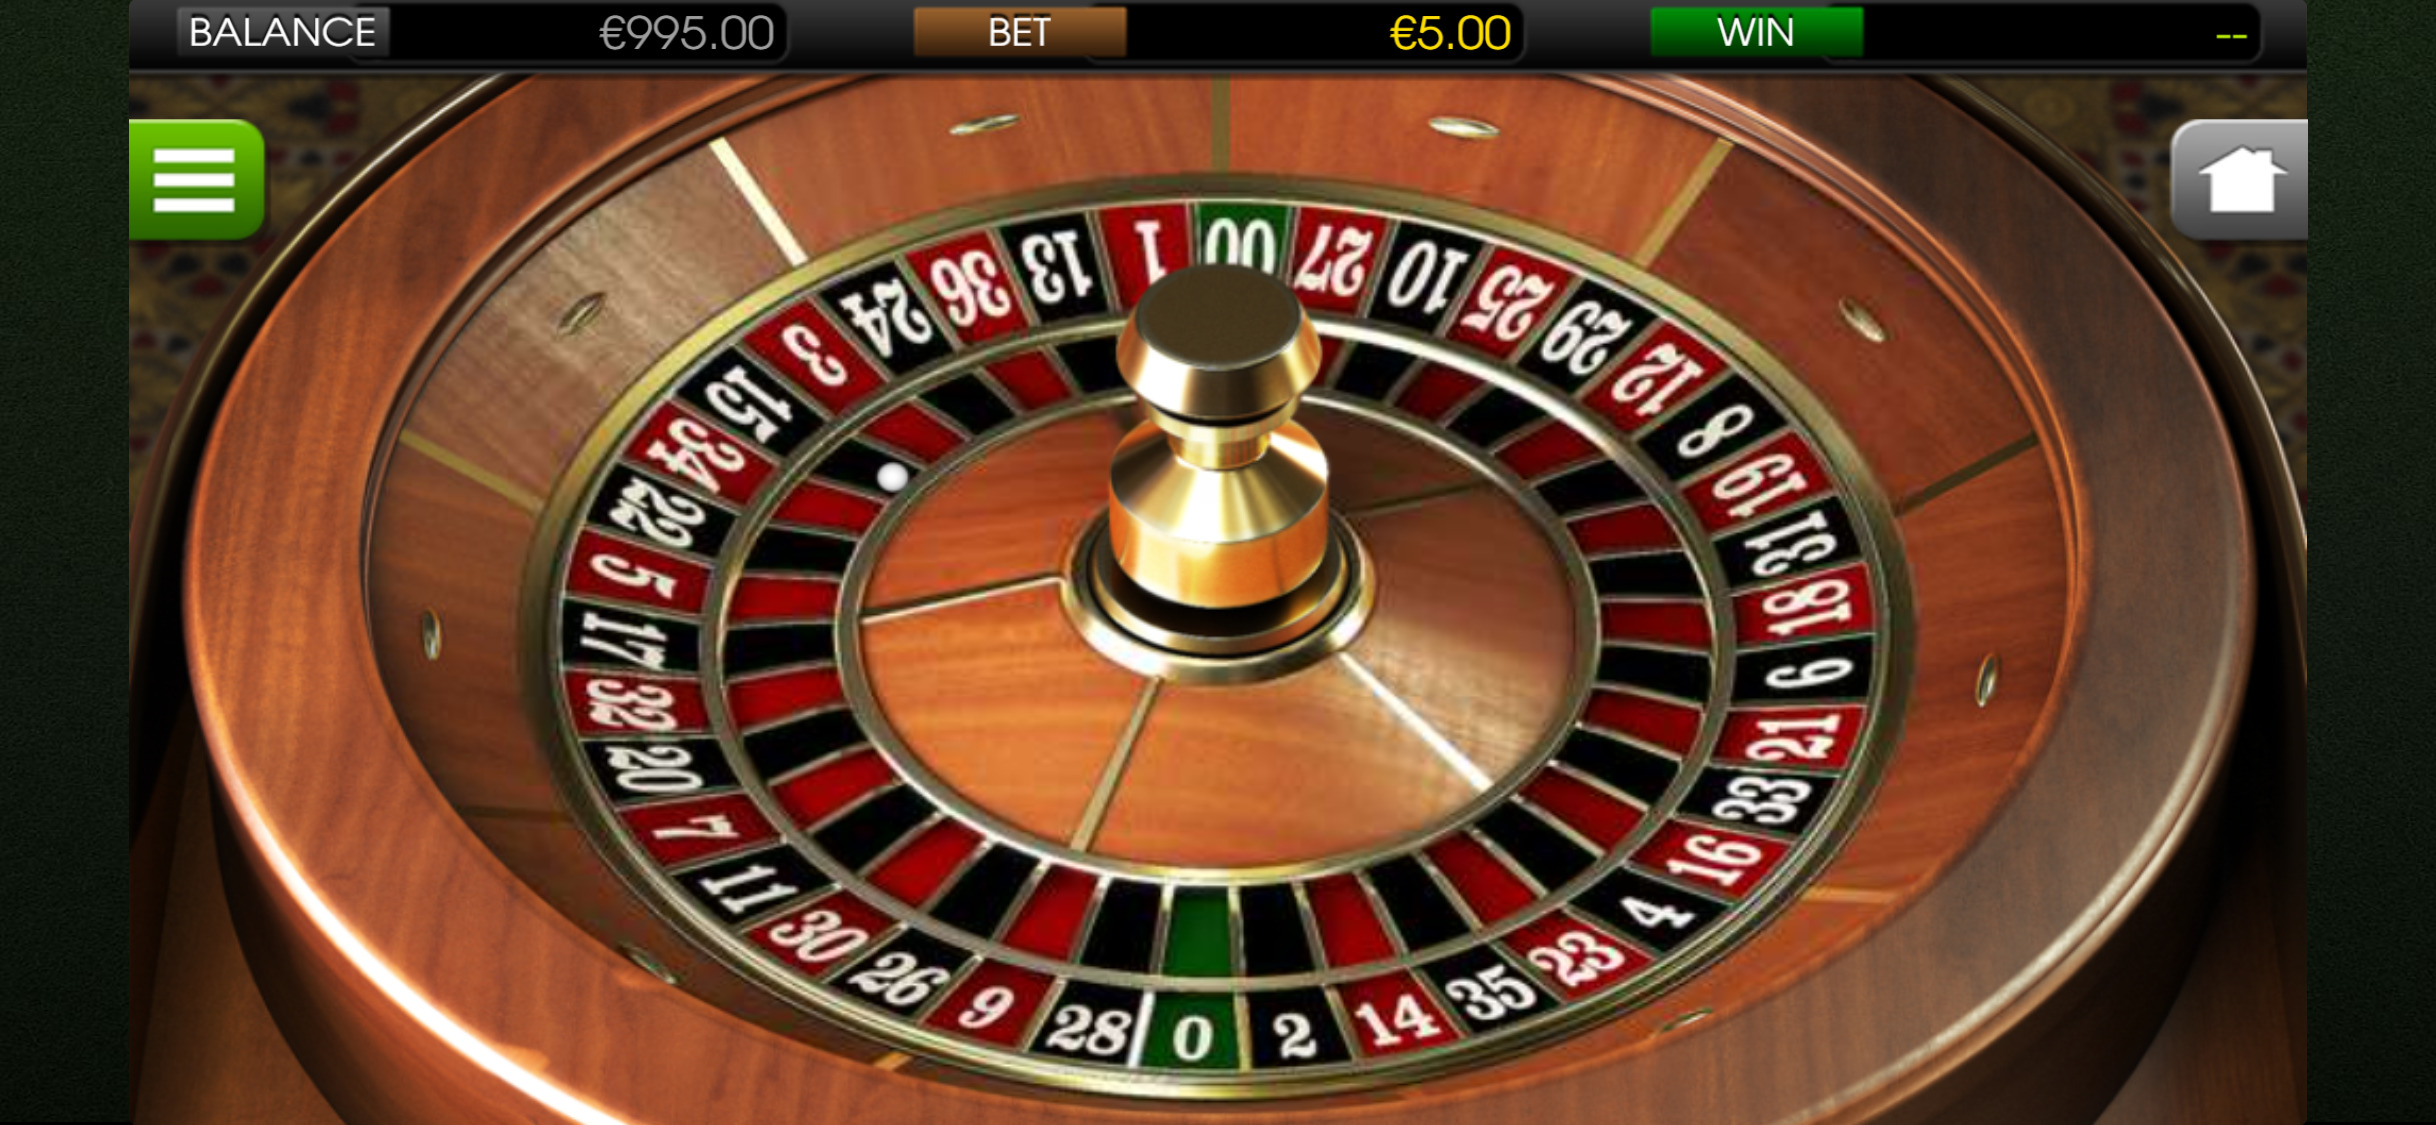 Coinbet24 Mobile Casino Games Review